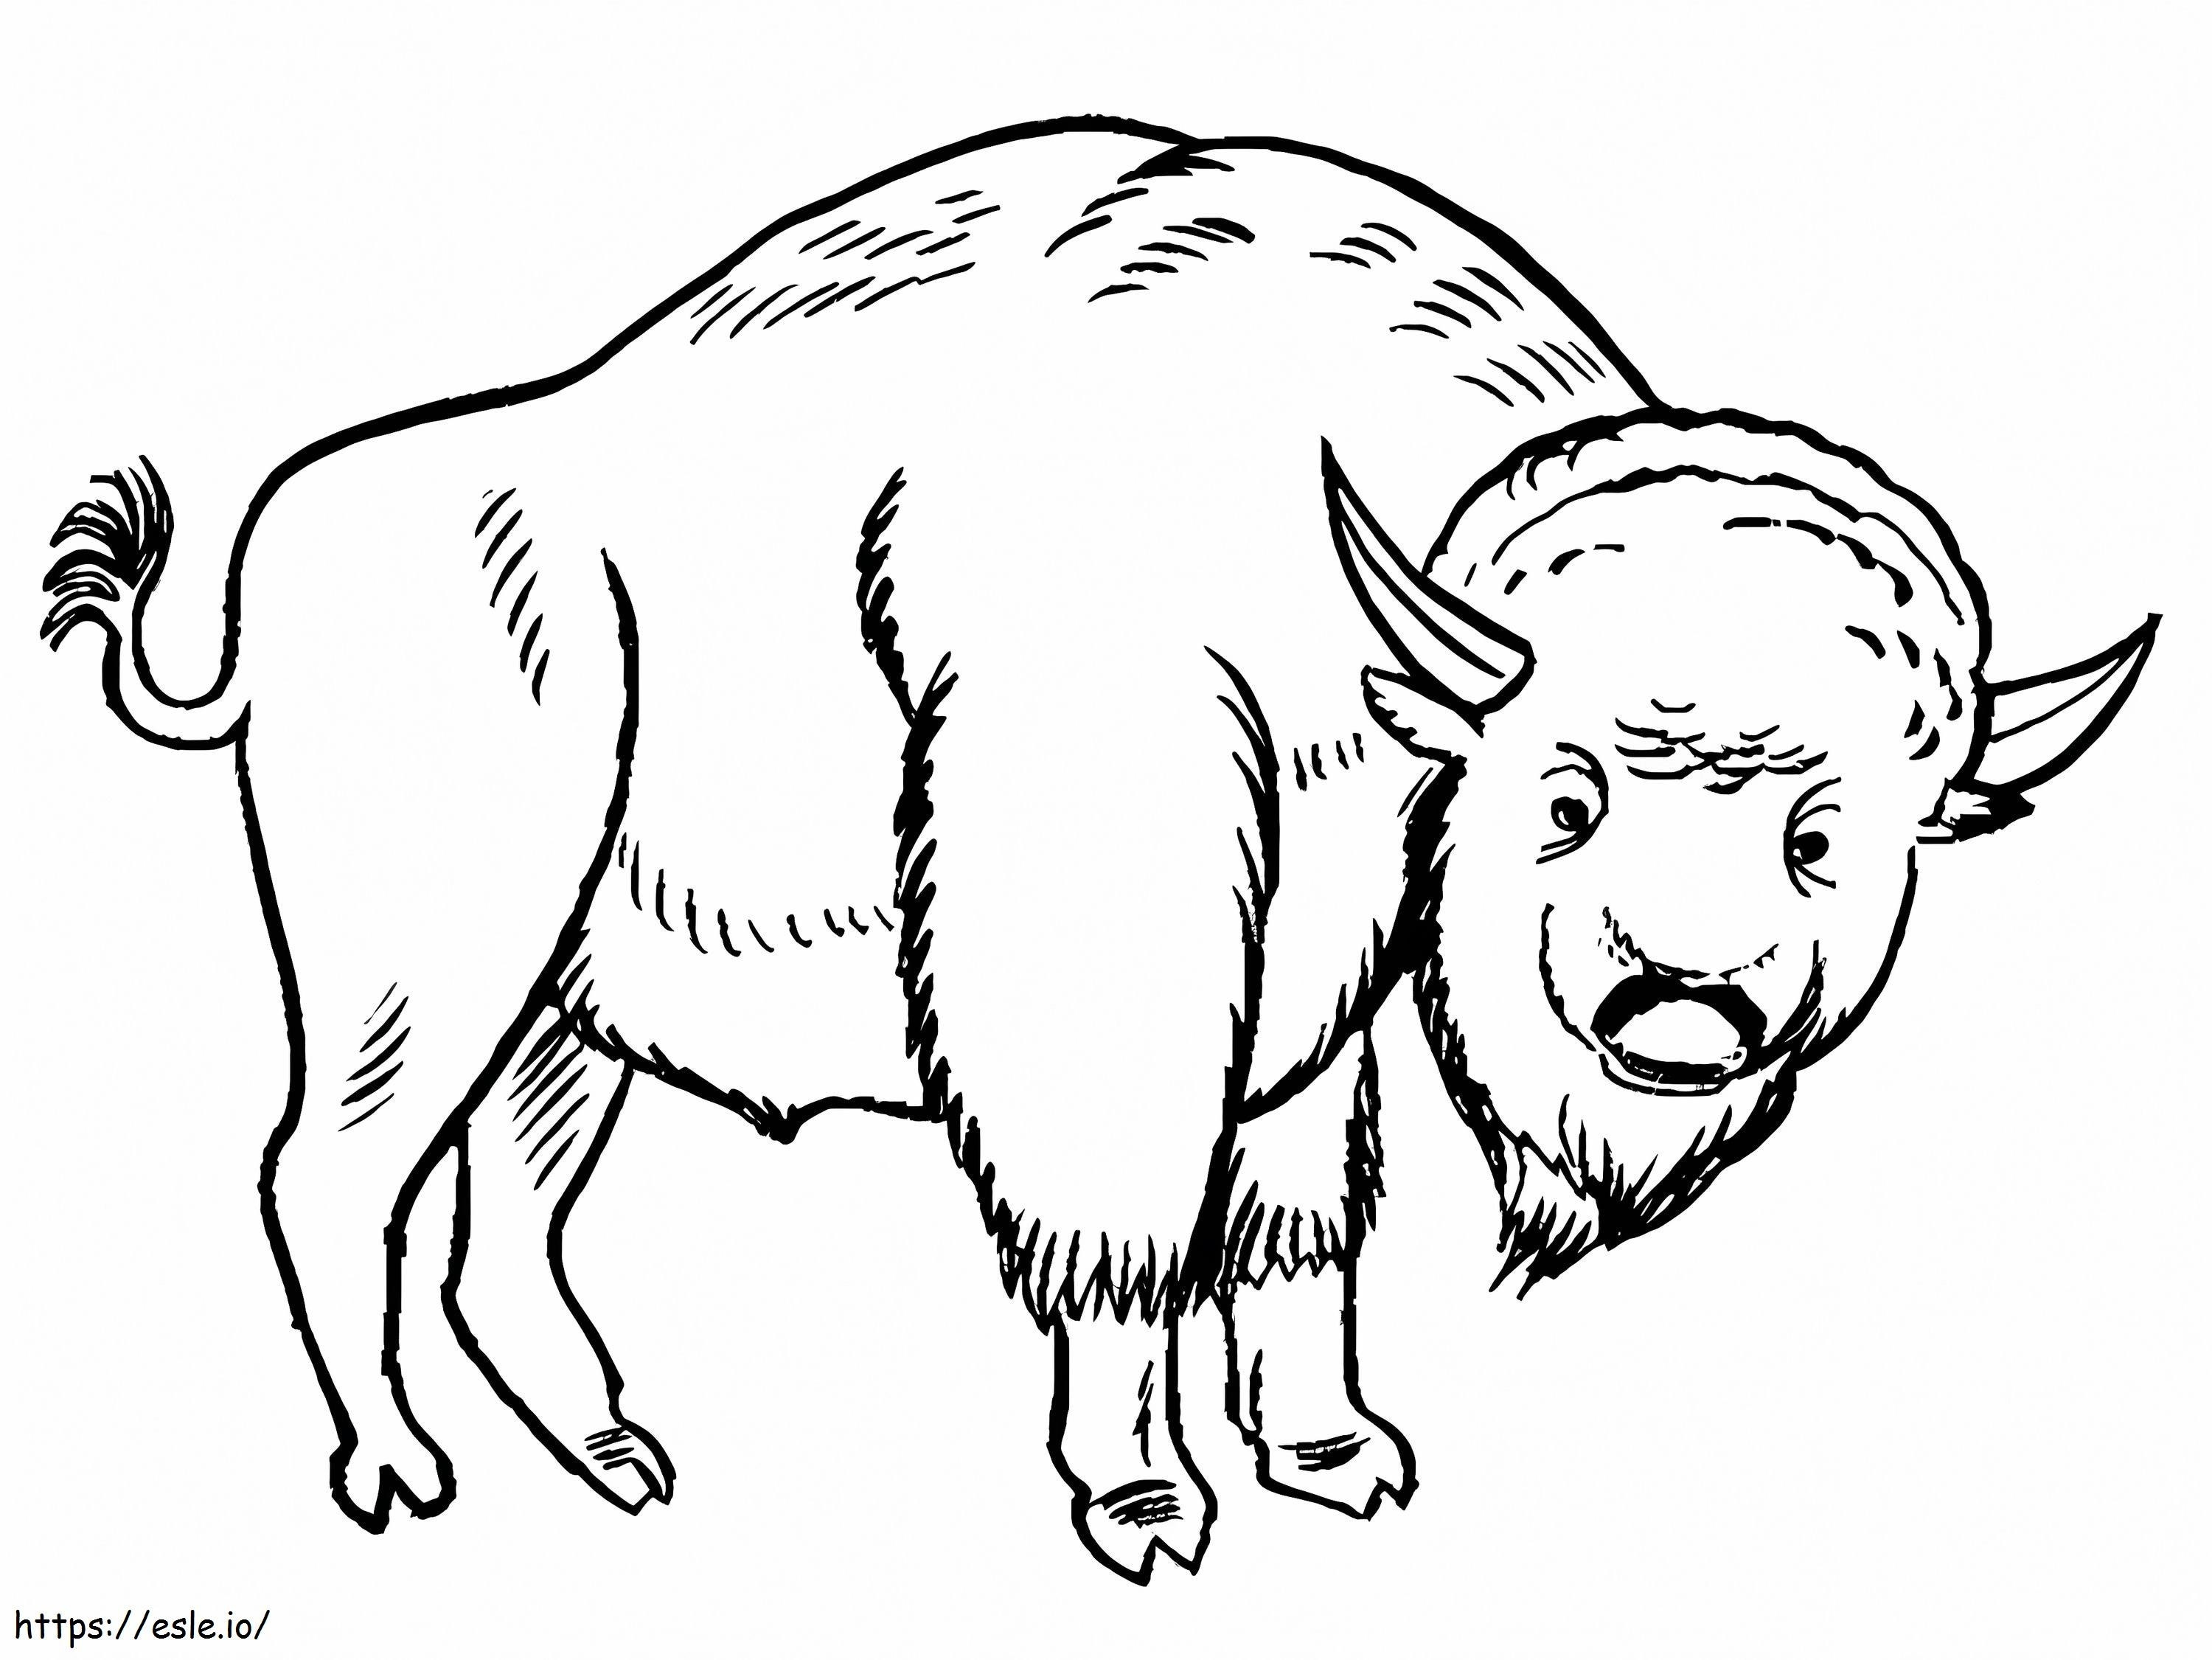 Um bisão para colorir